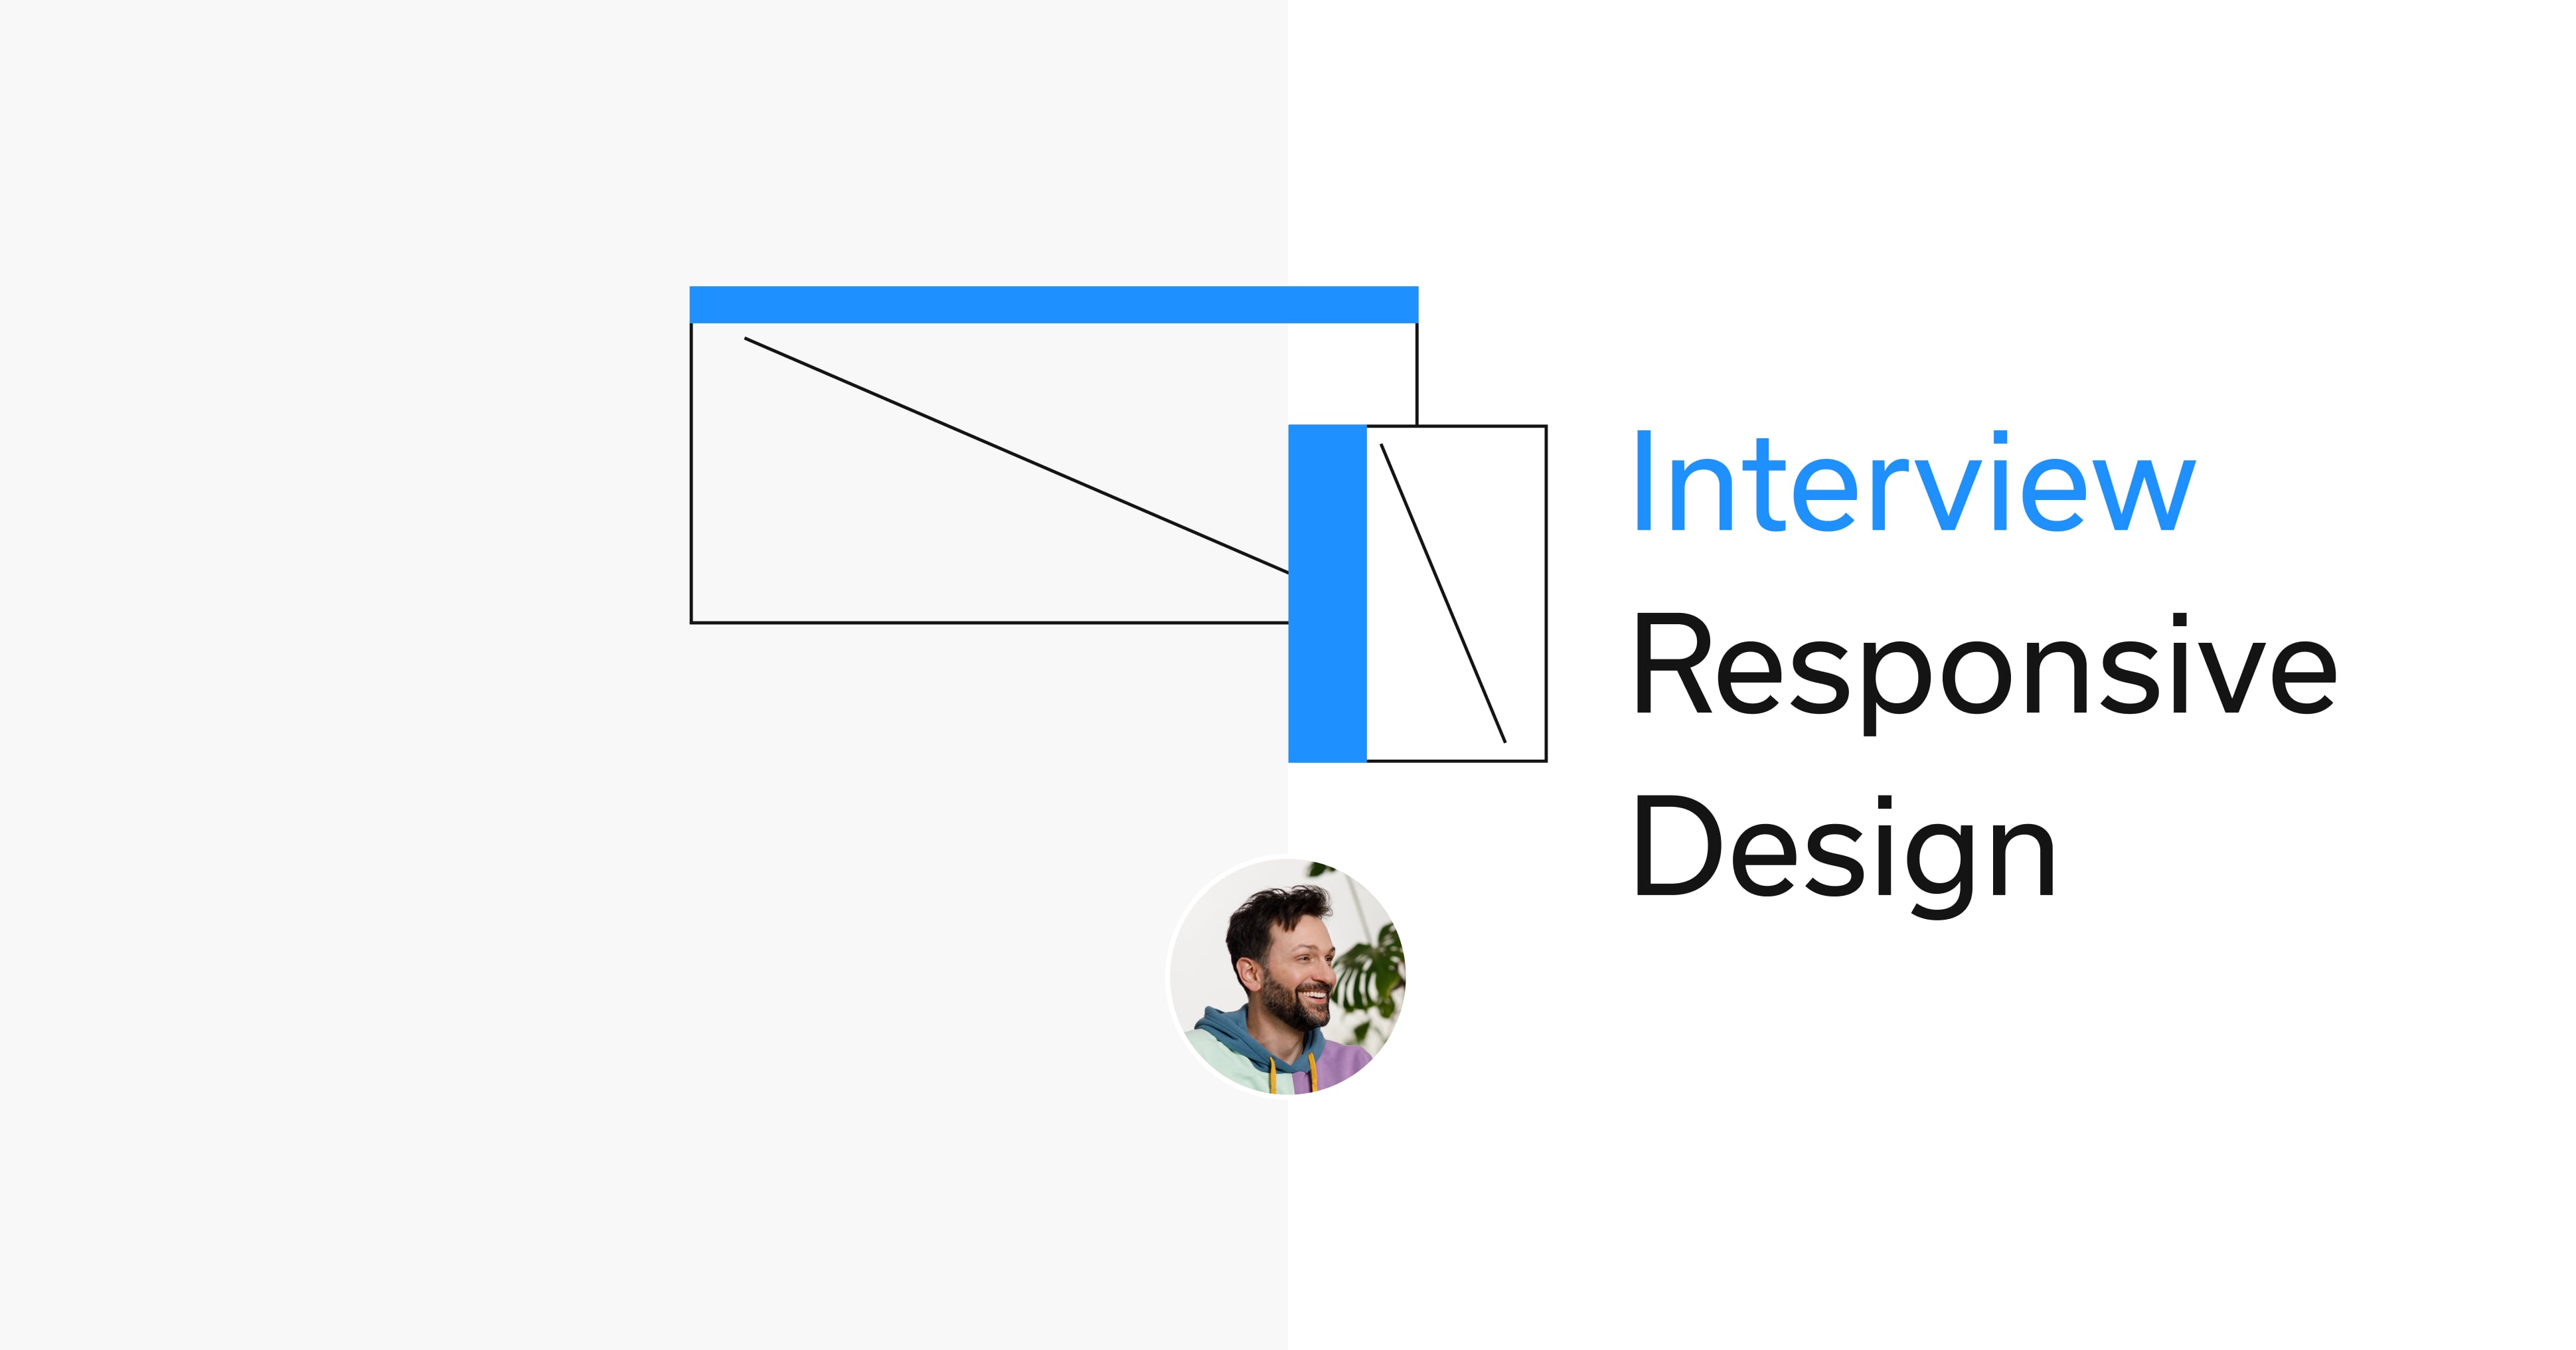 Interview: Ist Responsive Design immer die richtige Wahl?